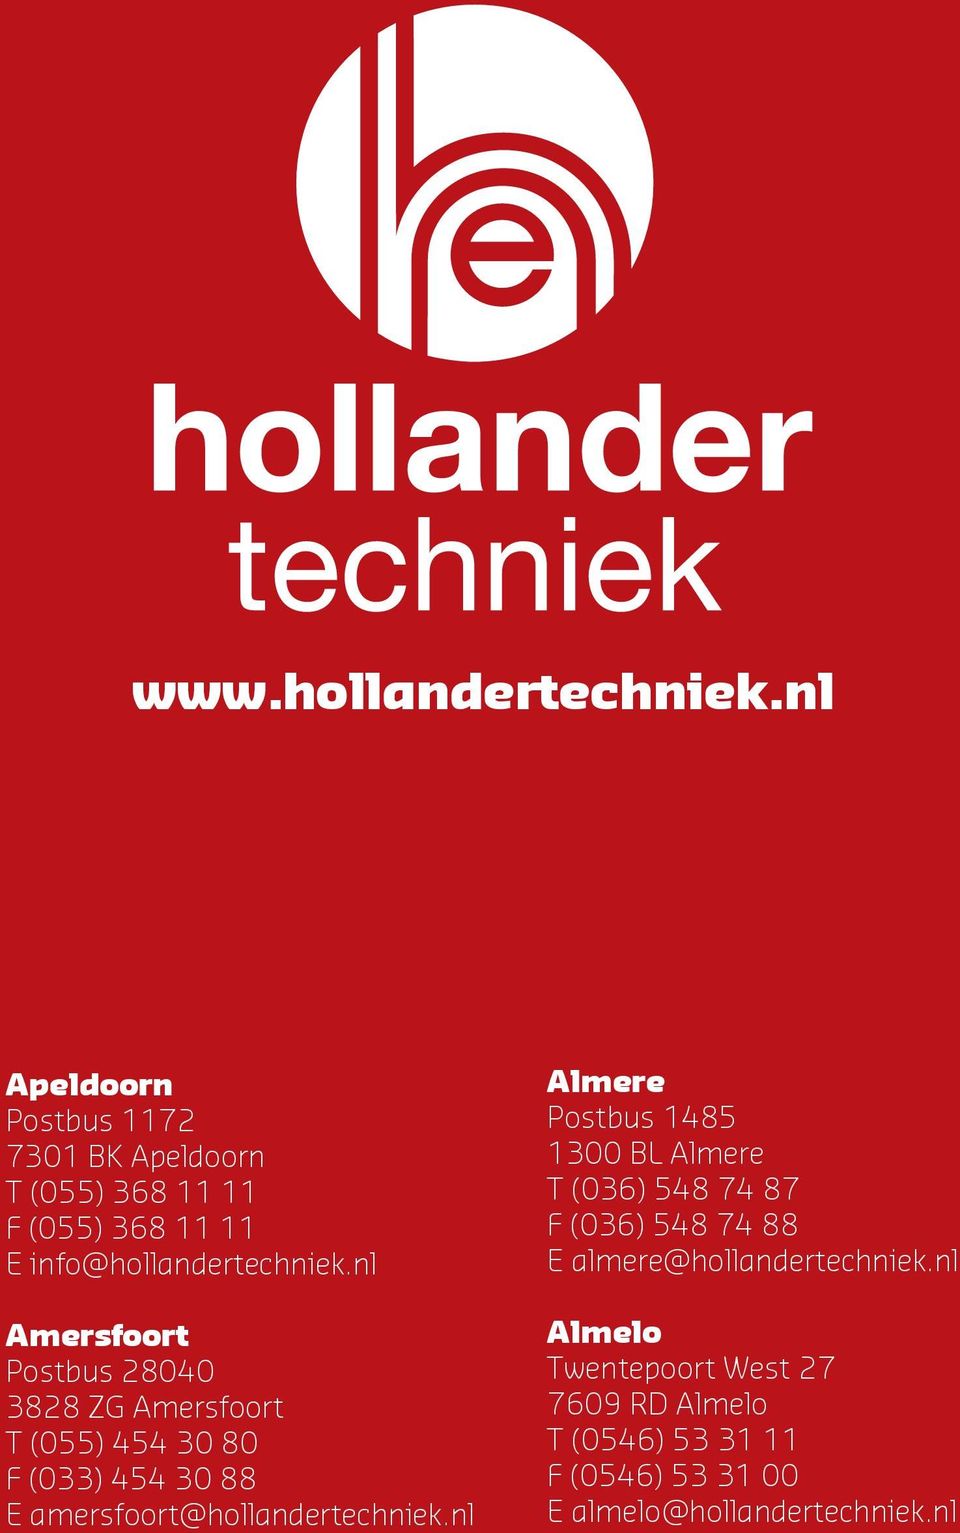 nl Almere Postbus 1485 1300 BL Almere T (036) 548 74 87 F (036) 548 74 88 E almere@hollandertechniek.